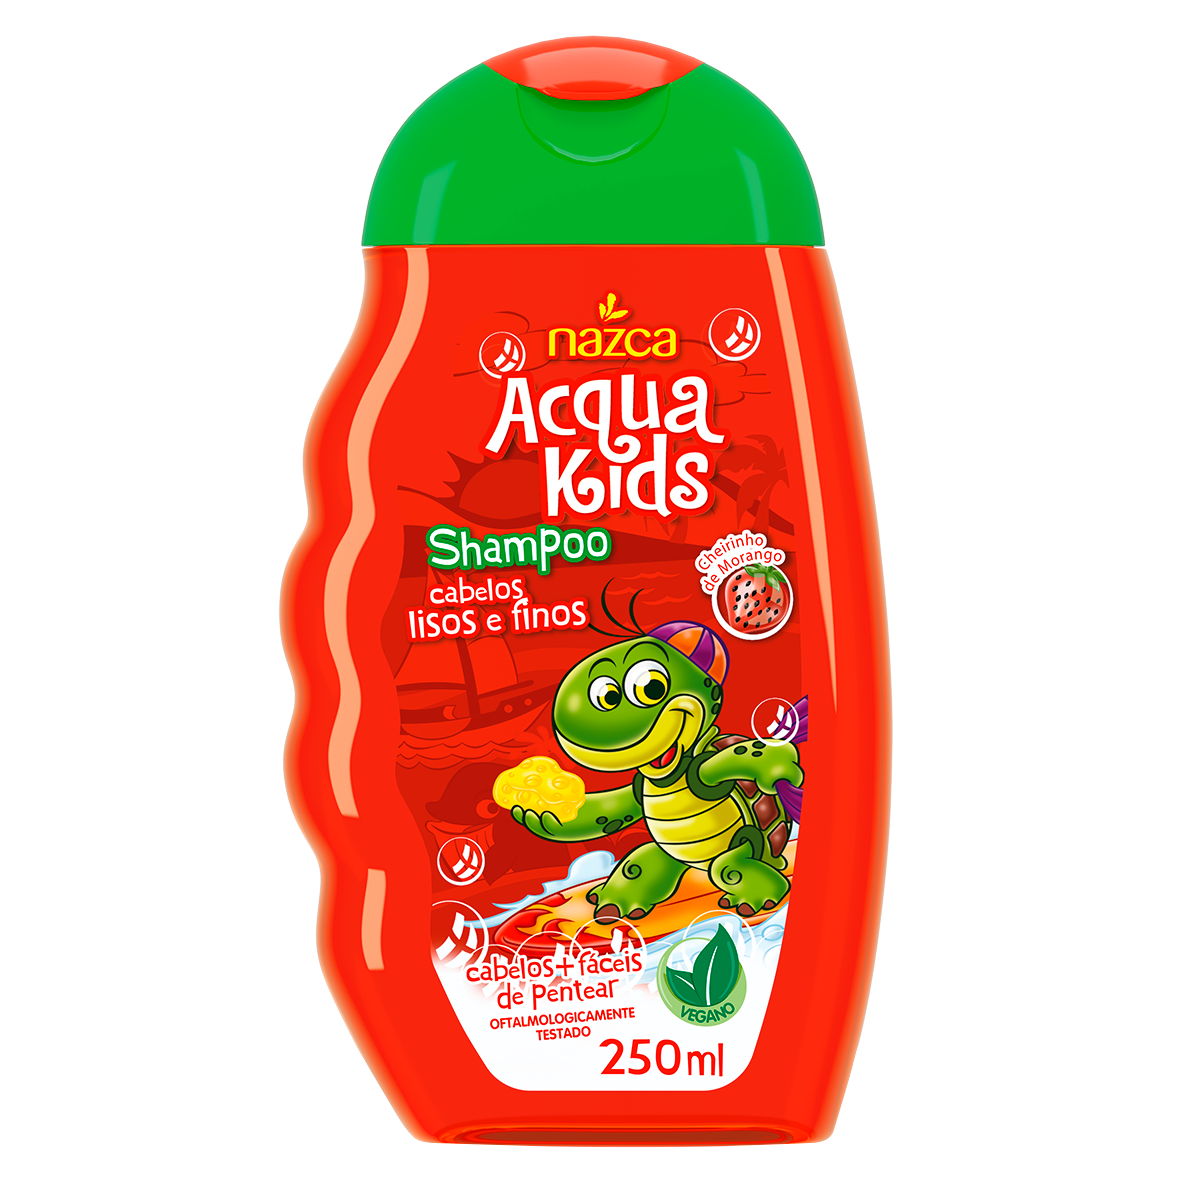 Shampoo Acqua Kids Lisos Finos 250ml